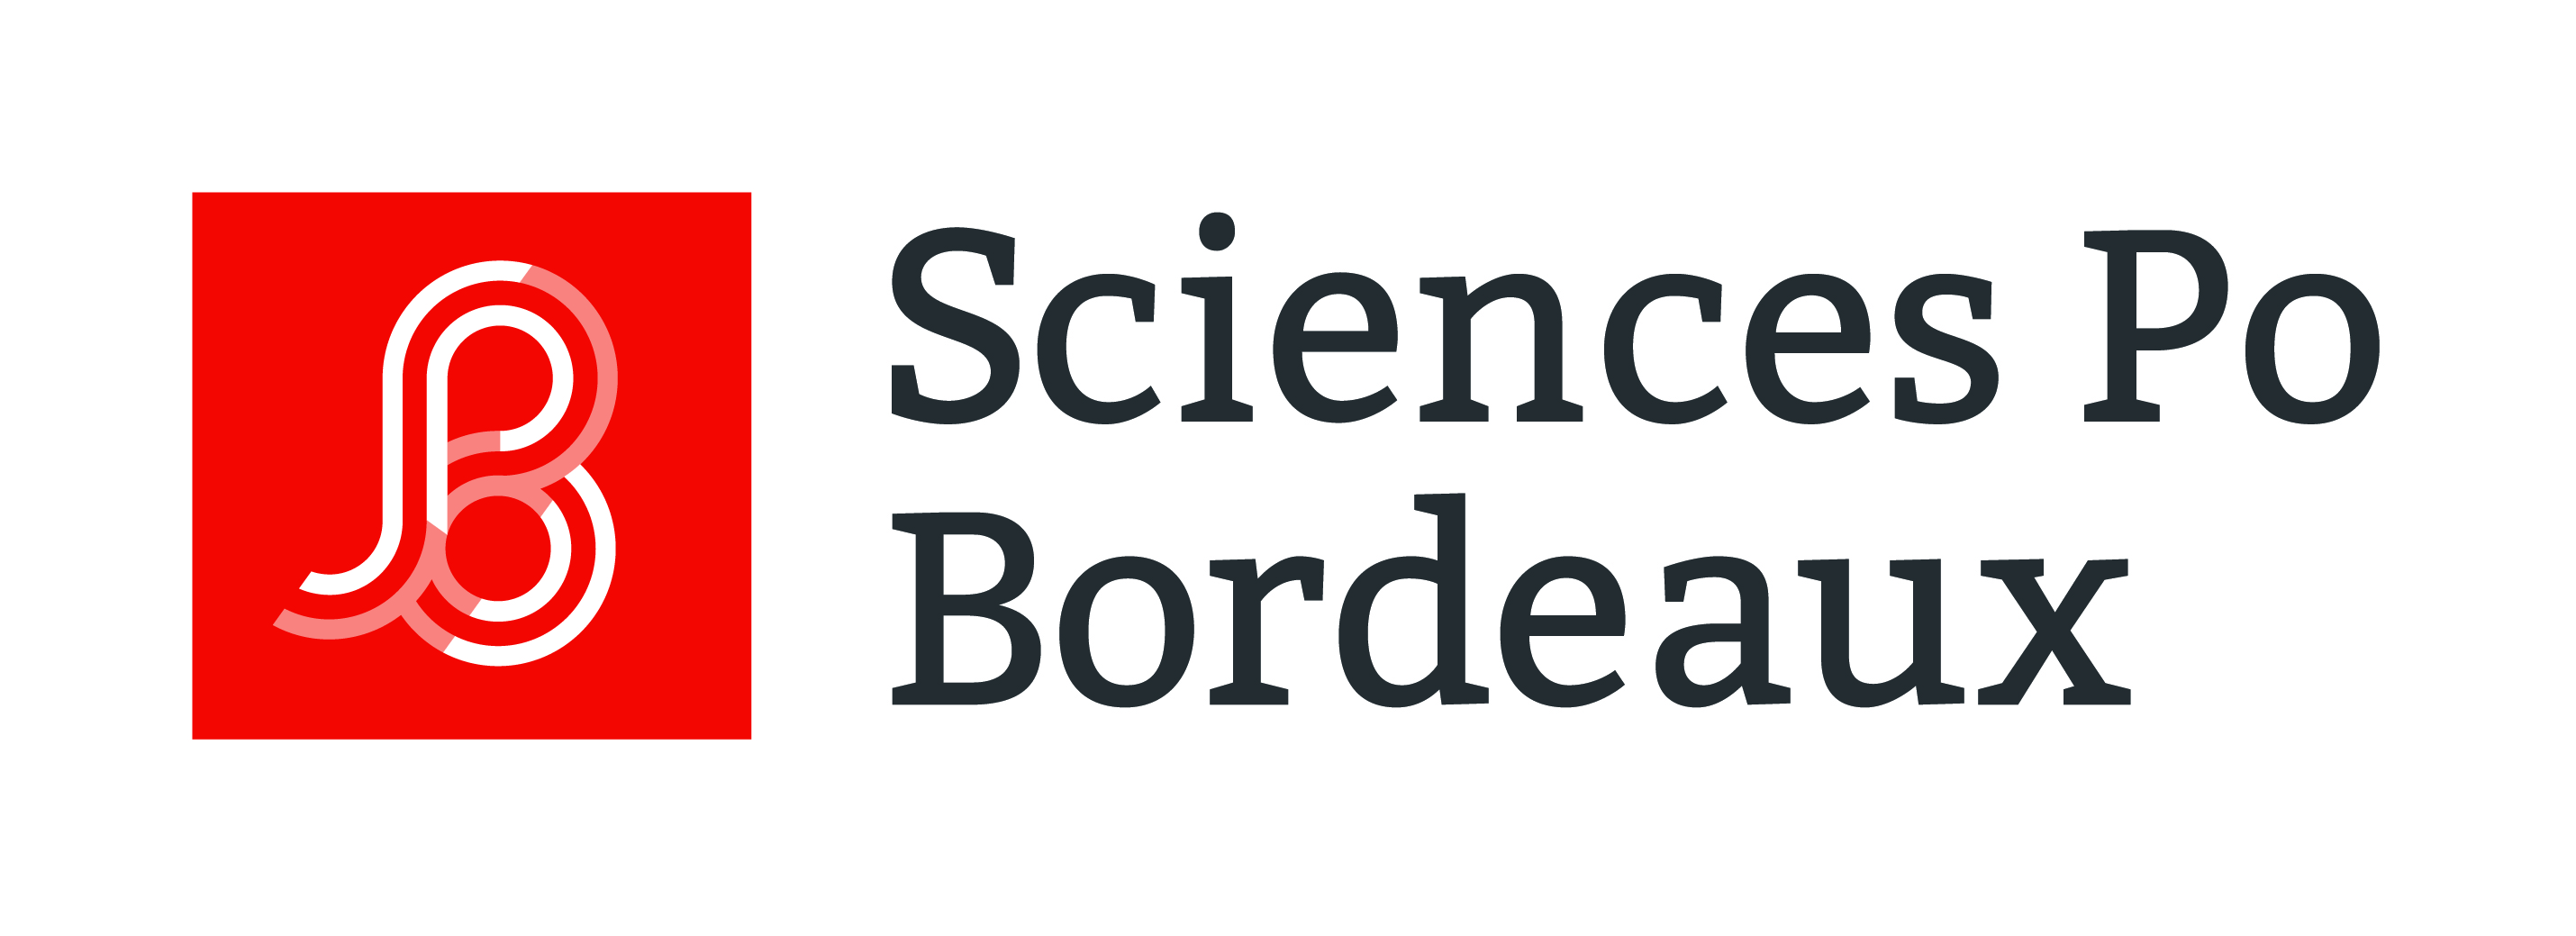 Logo Sciences Po Bordeaux